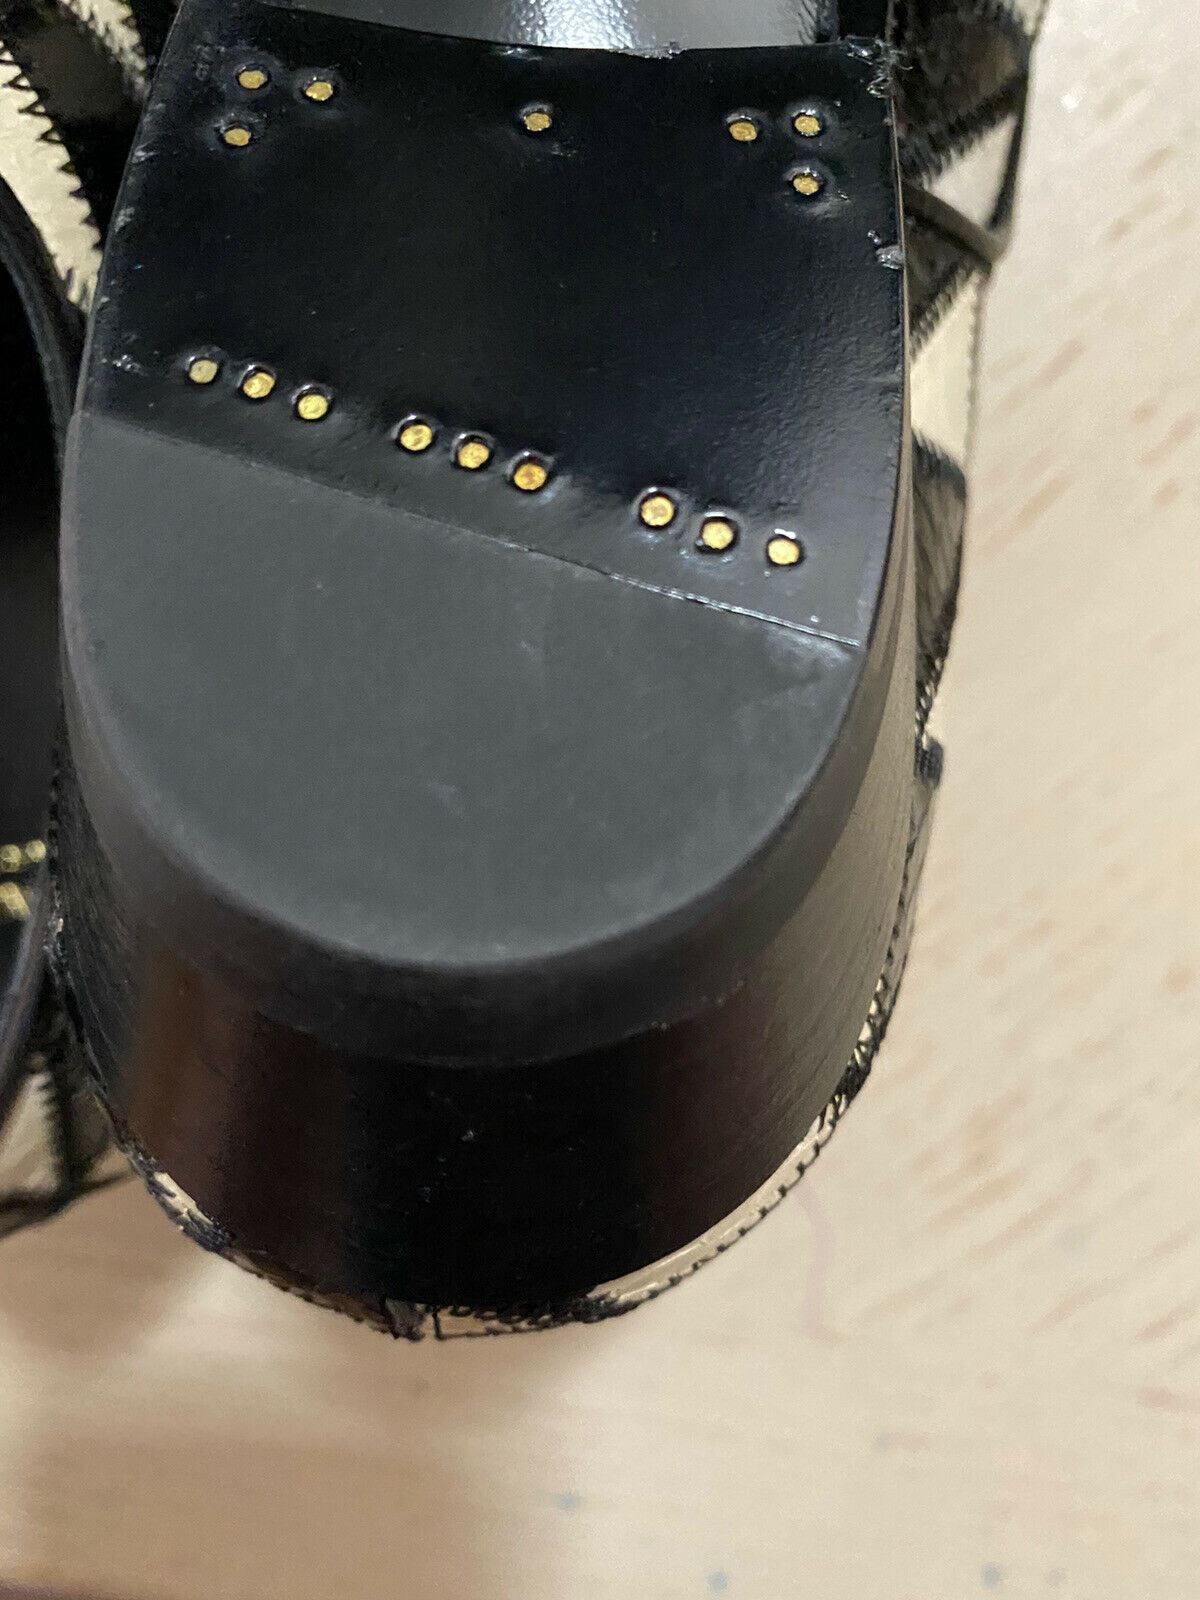 NIB $1795 Saint Laurent Женские кожаные туфли из питона черного/слоновой кости 8 США (38 евро)